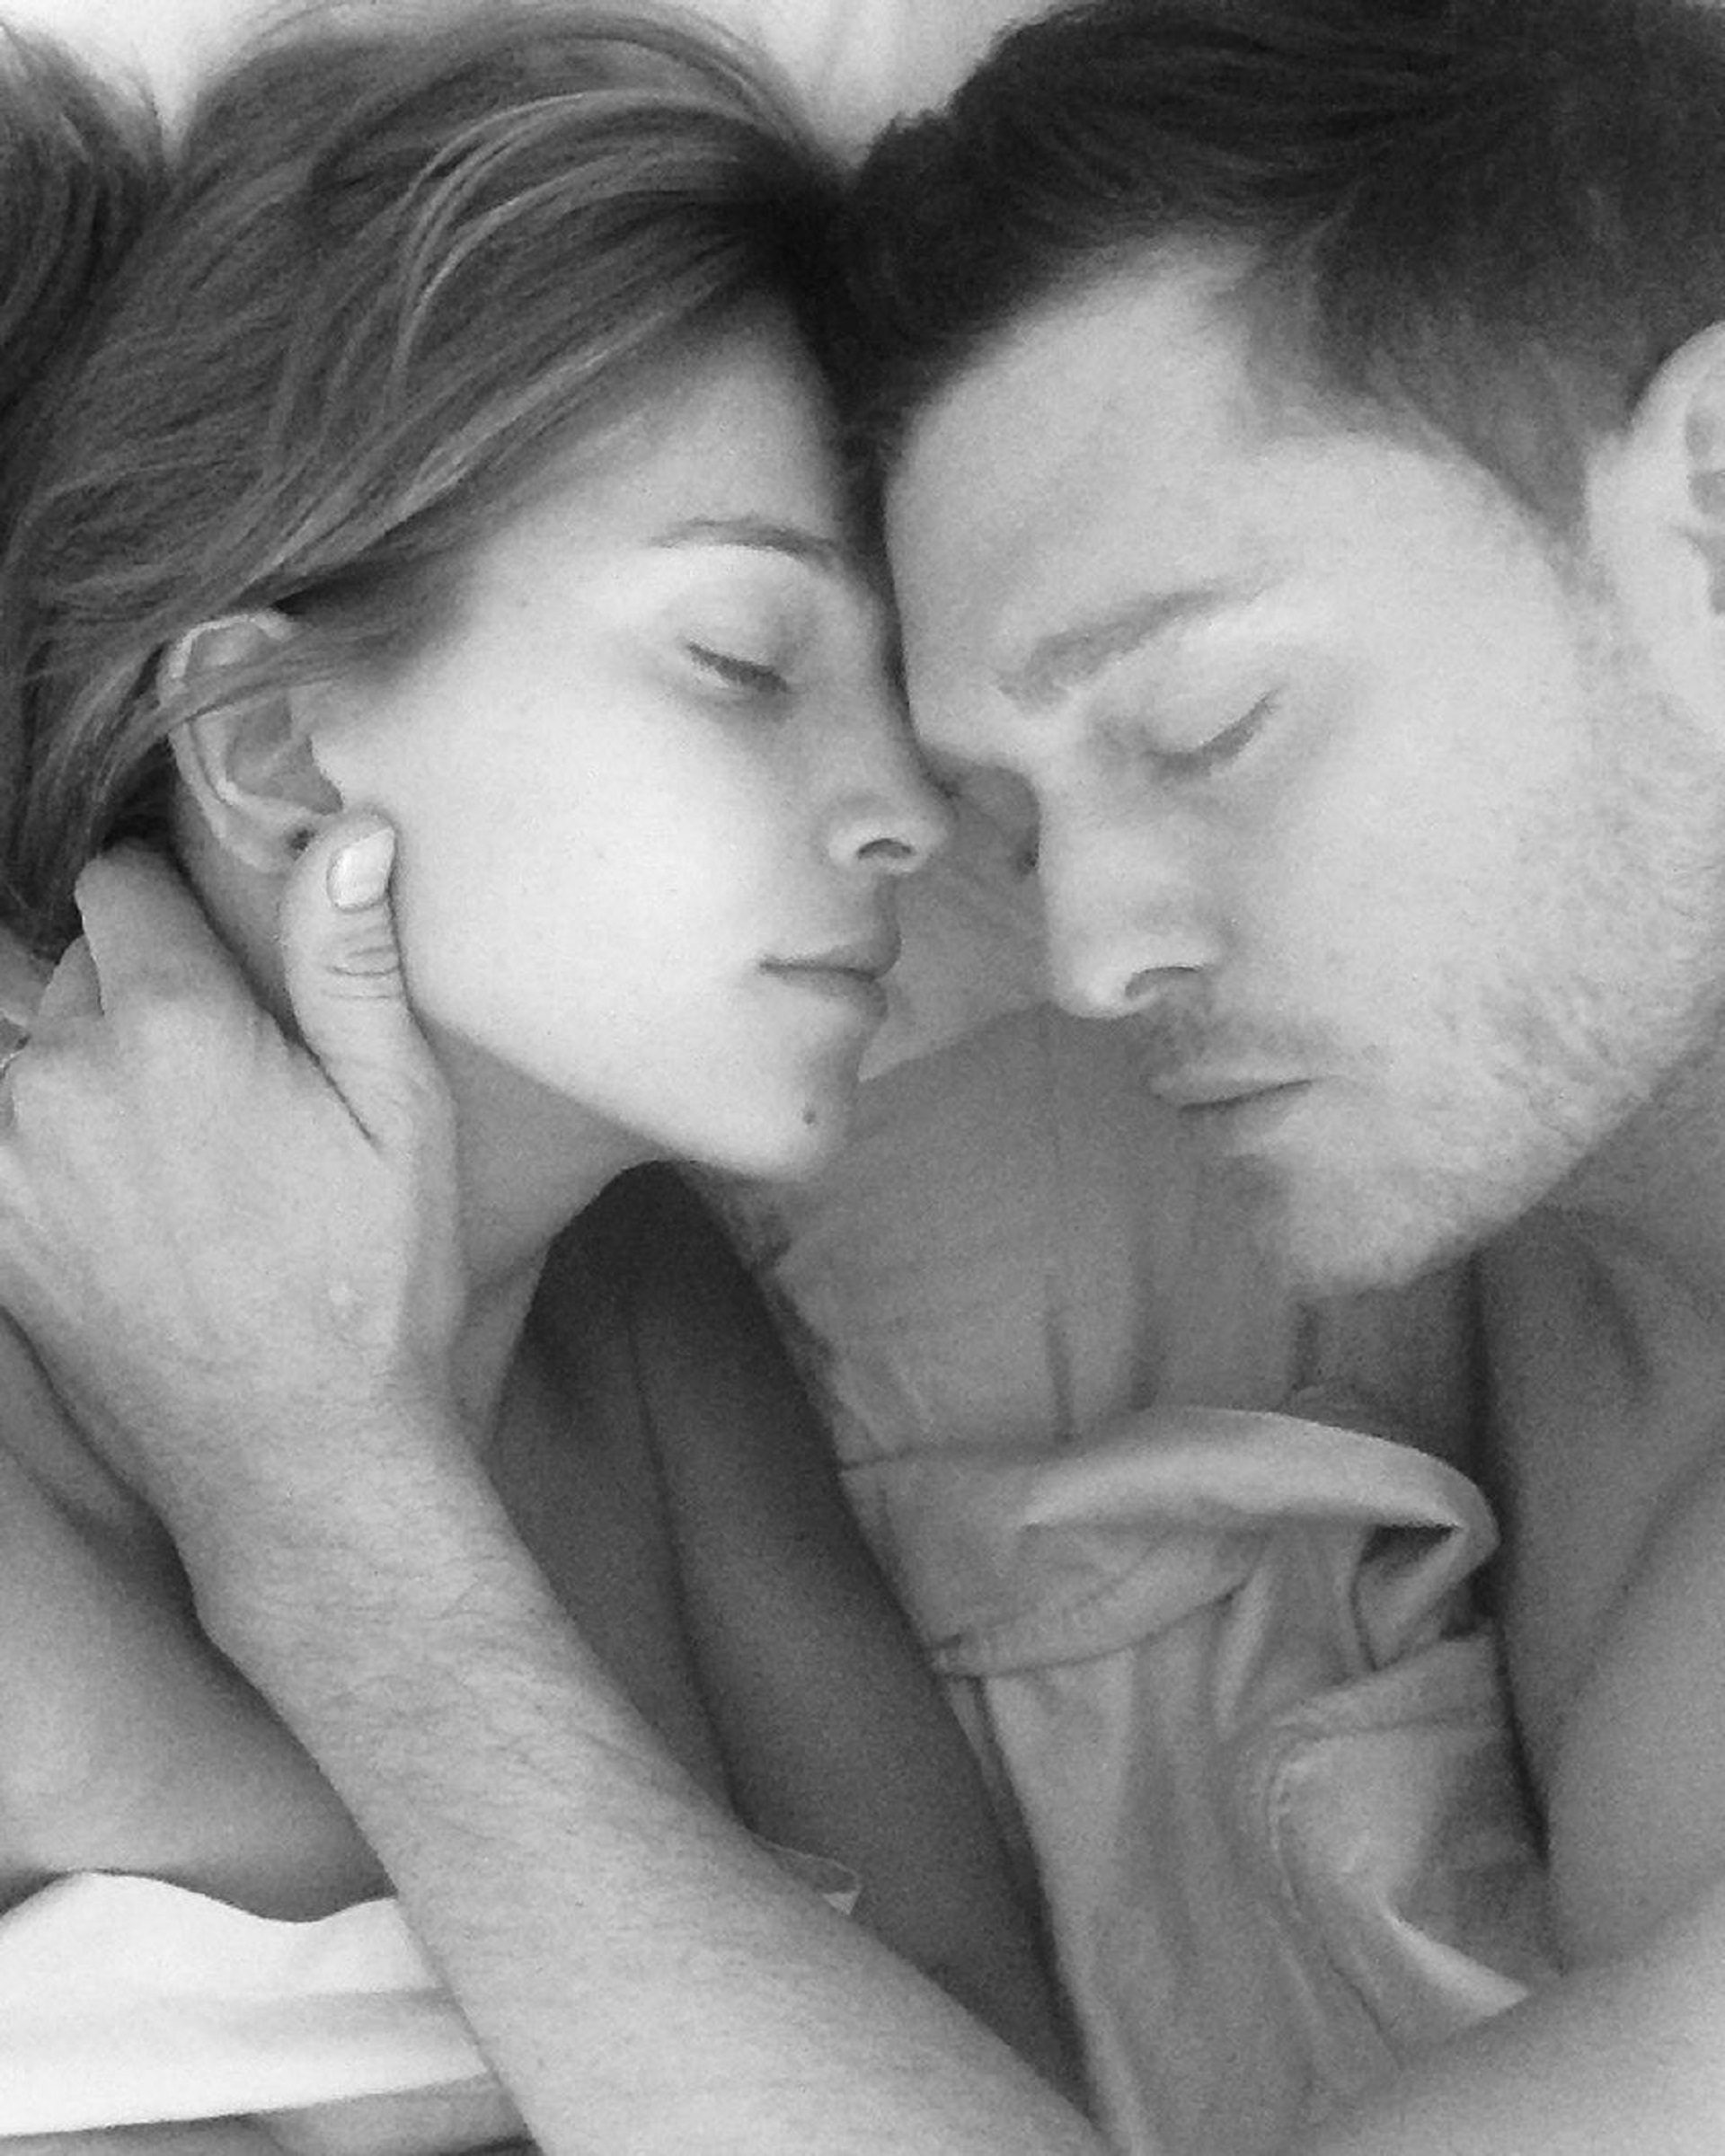 Luisana Lopilato y Michael Bublé comparten románticas fotos en sus redes sociales